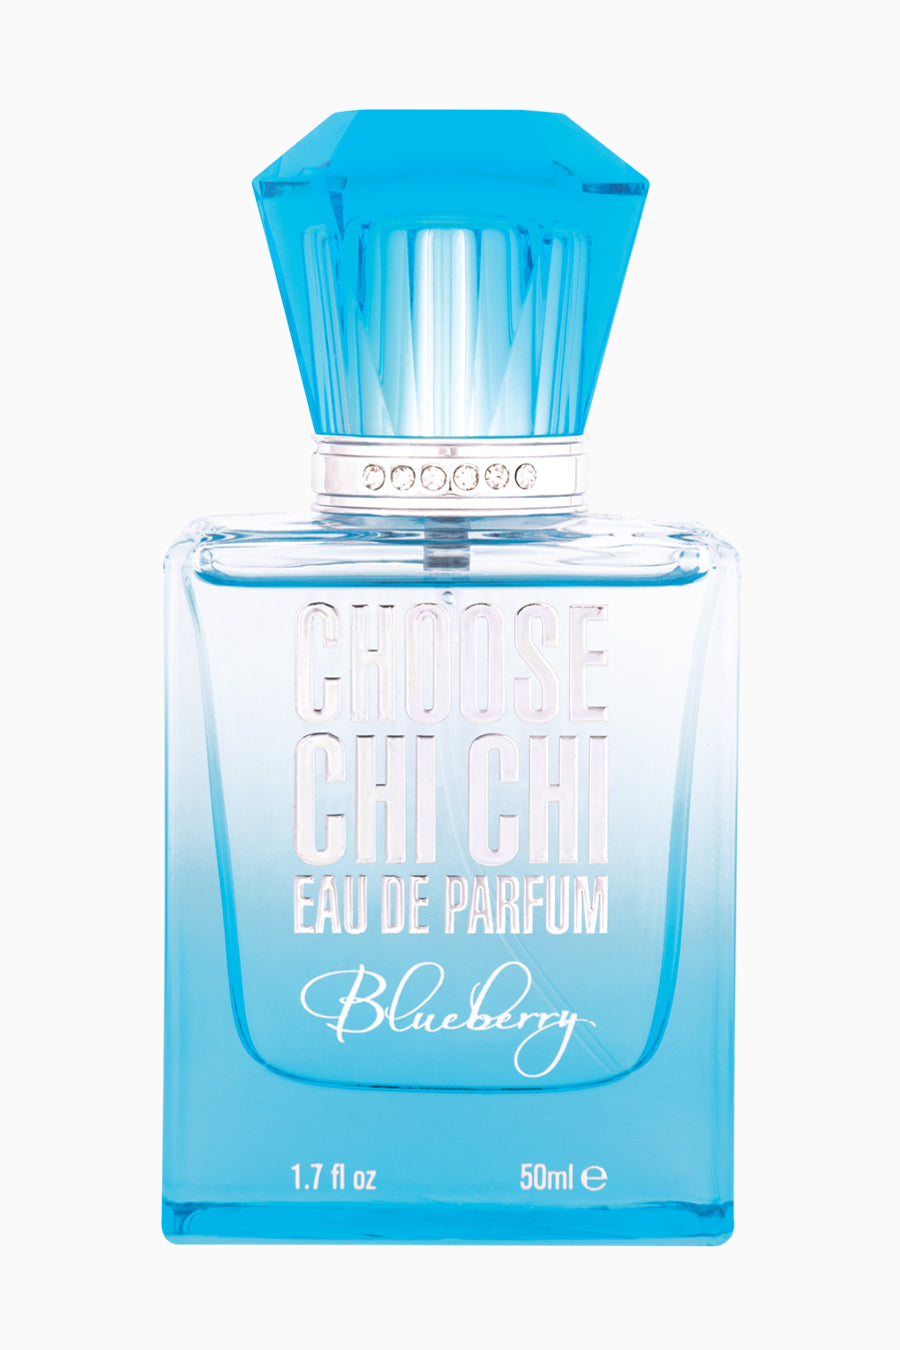 blueberry-eau-de-parfum